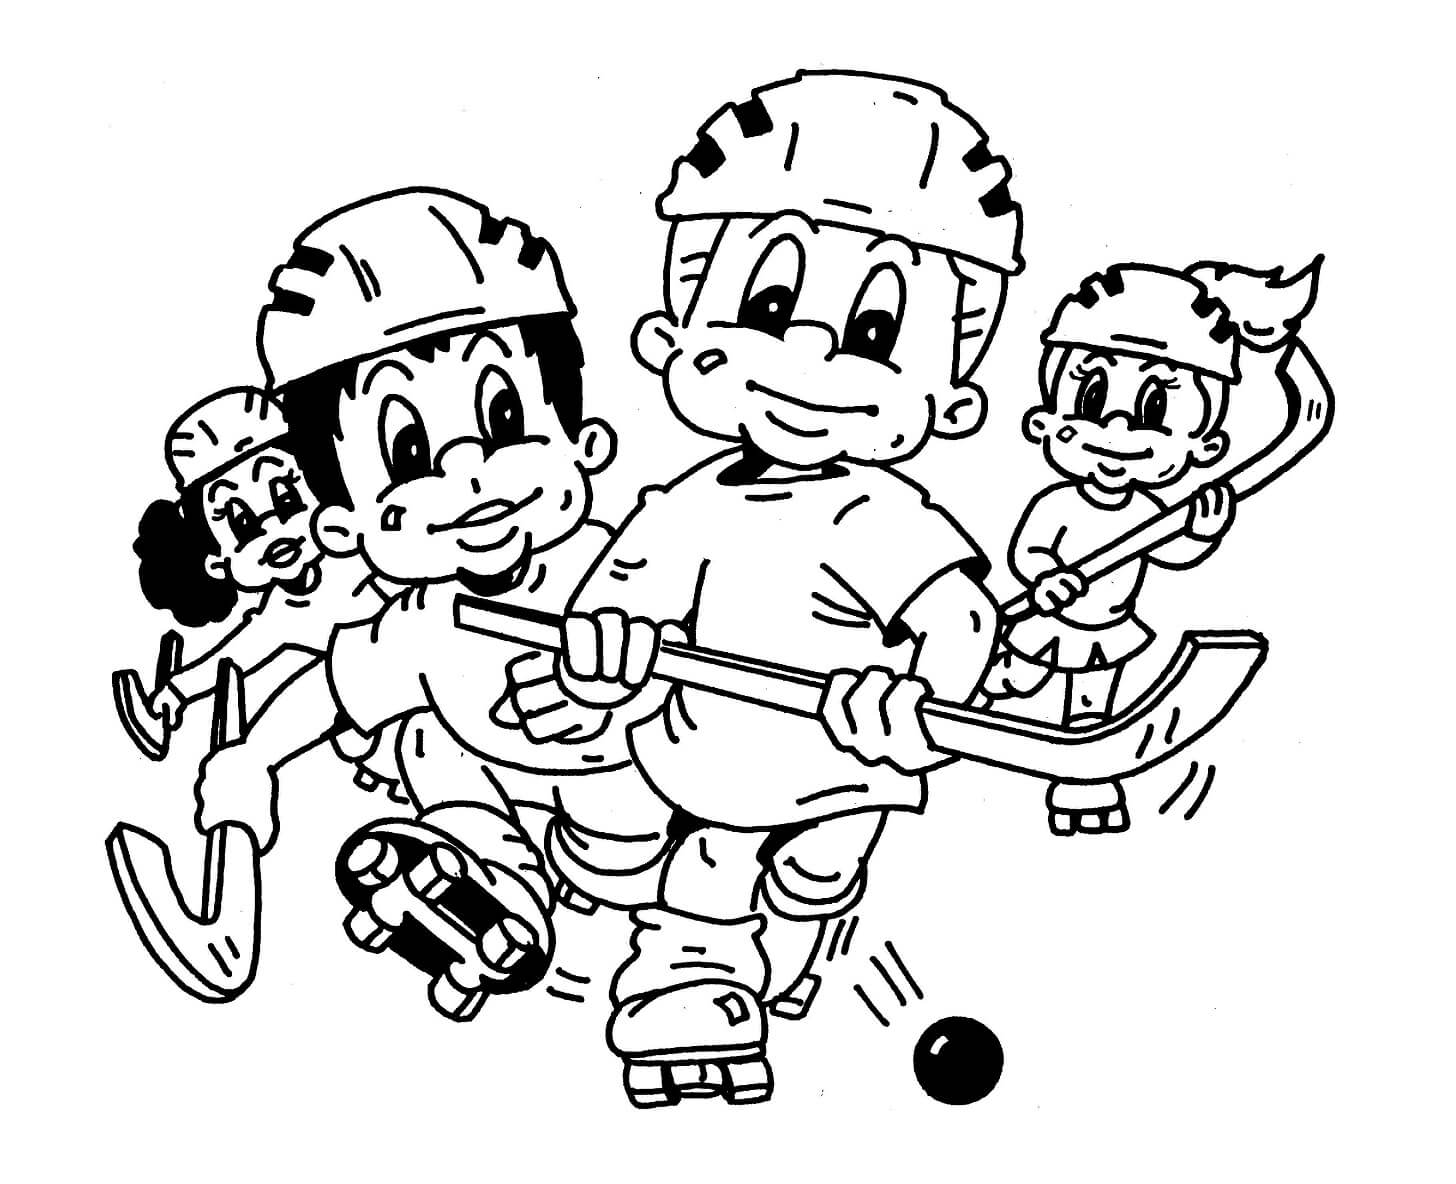 Quatro Crianças Brincando de Hóquei para colorir